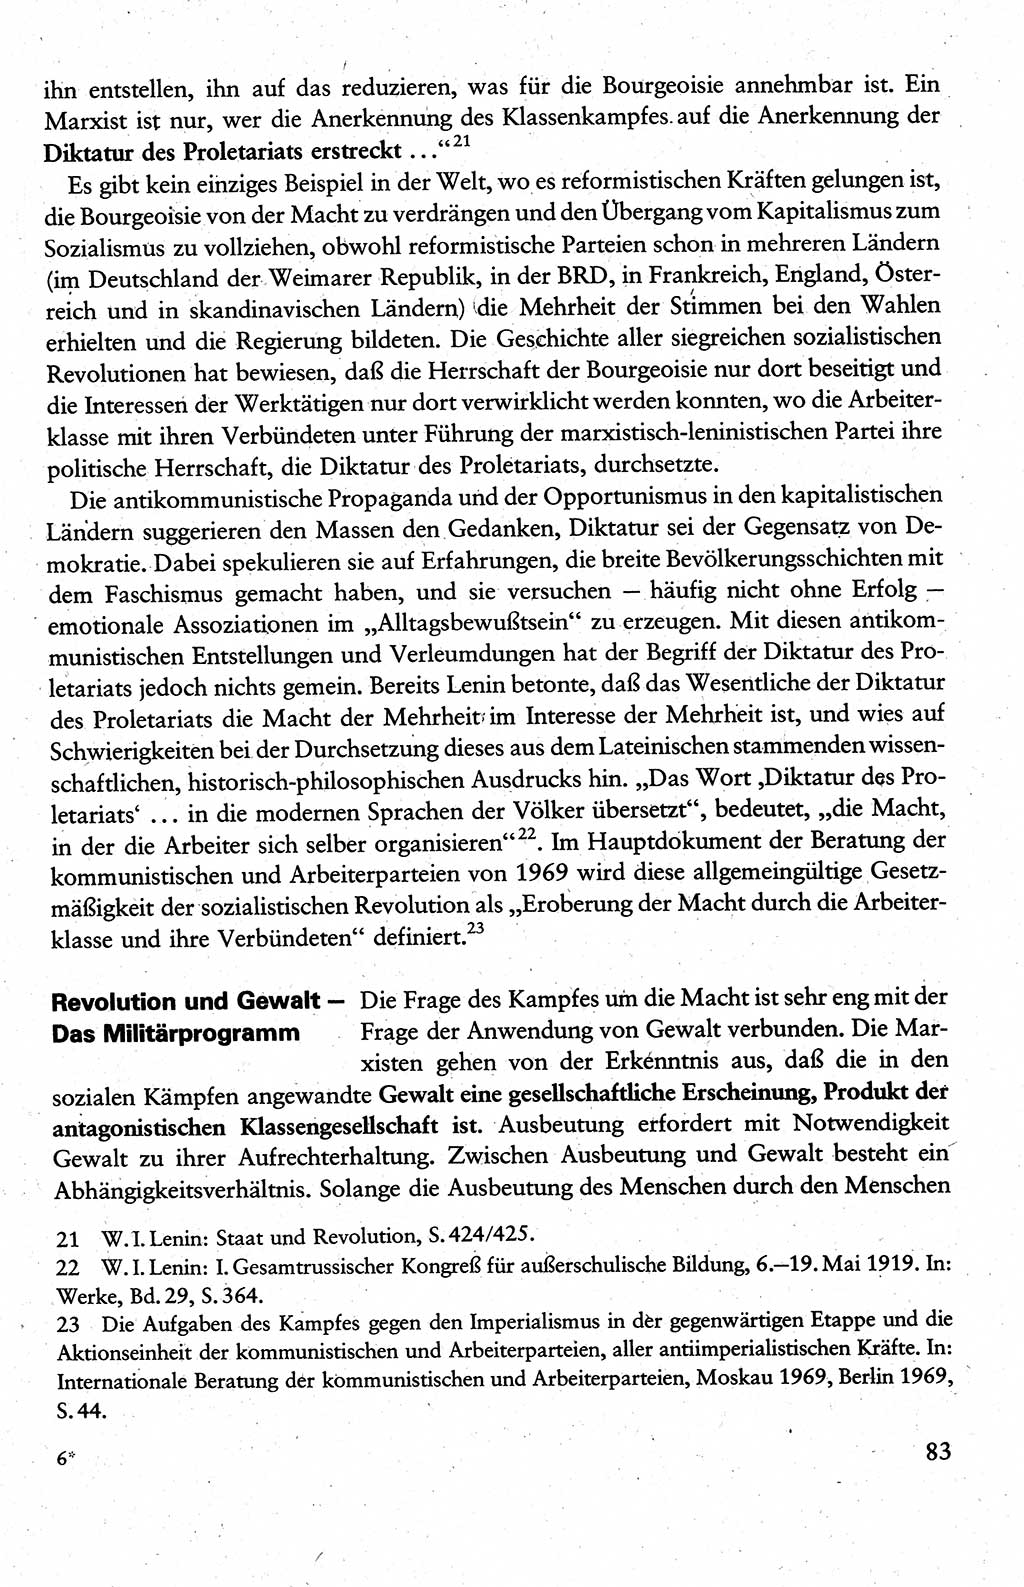 Wissenschaftlicher Kommunismus [Deutsche Demokratische Republik (DDR)], Lehrbuch für das marxistisch-leninistische Grundlagenstudium 1983, Seite 83 (Wiss. Komm. DDR Lb. 1983, S. 83)